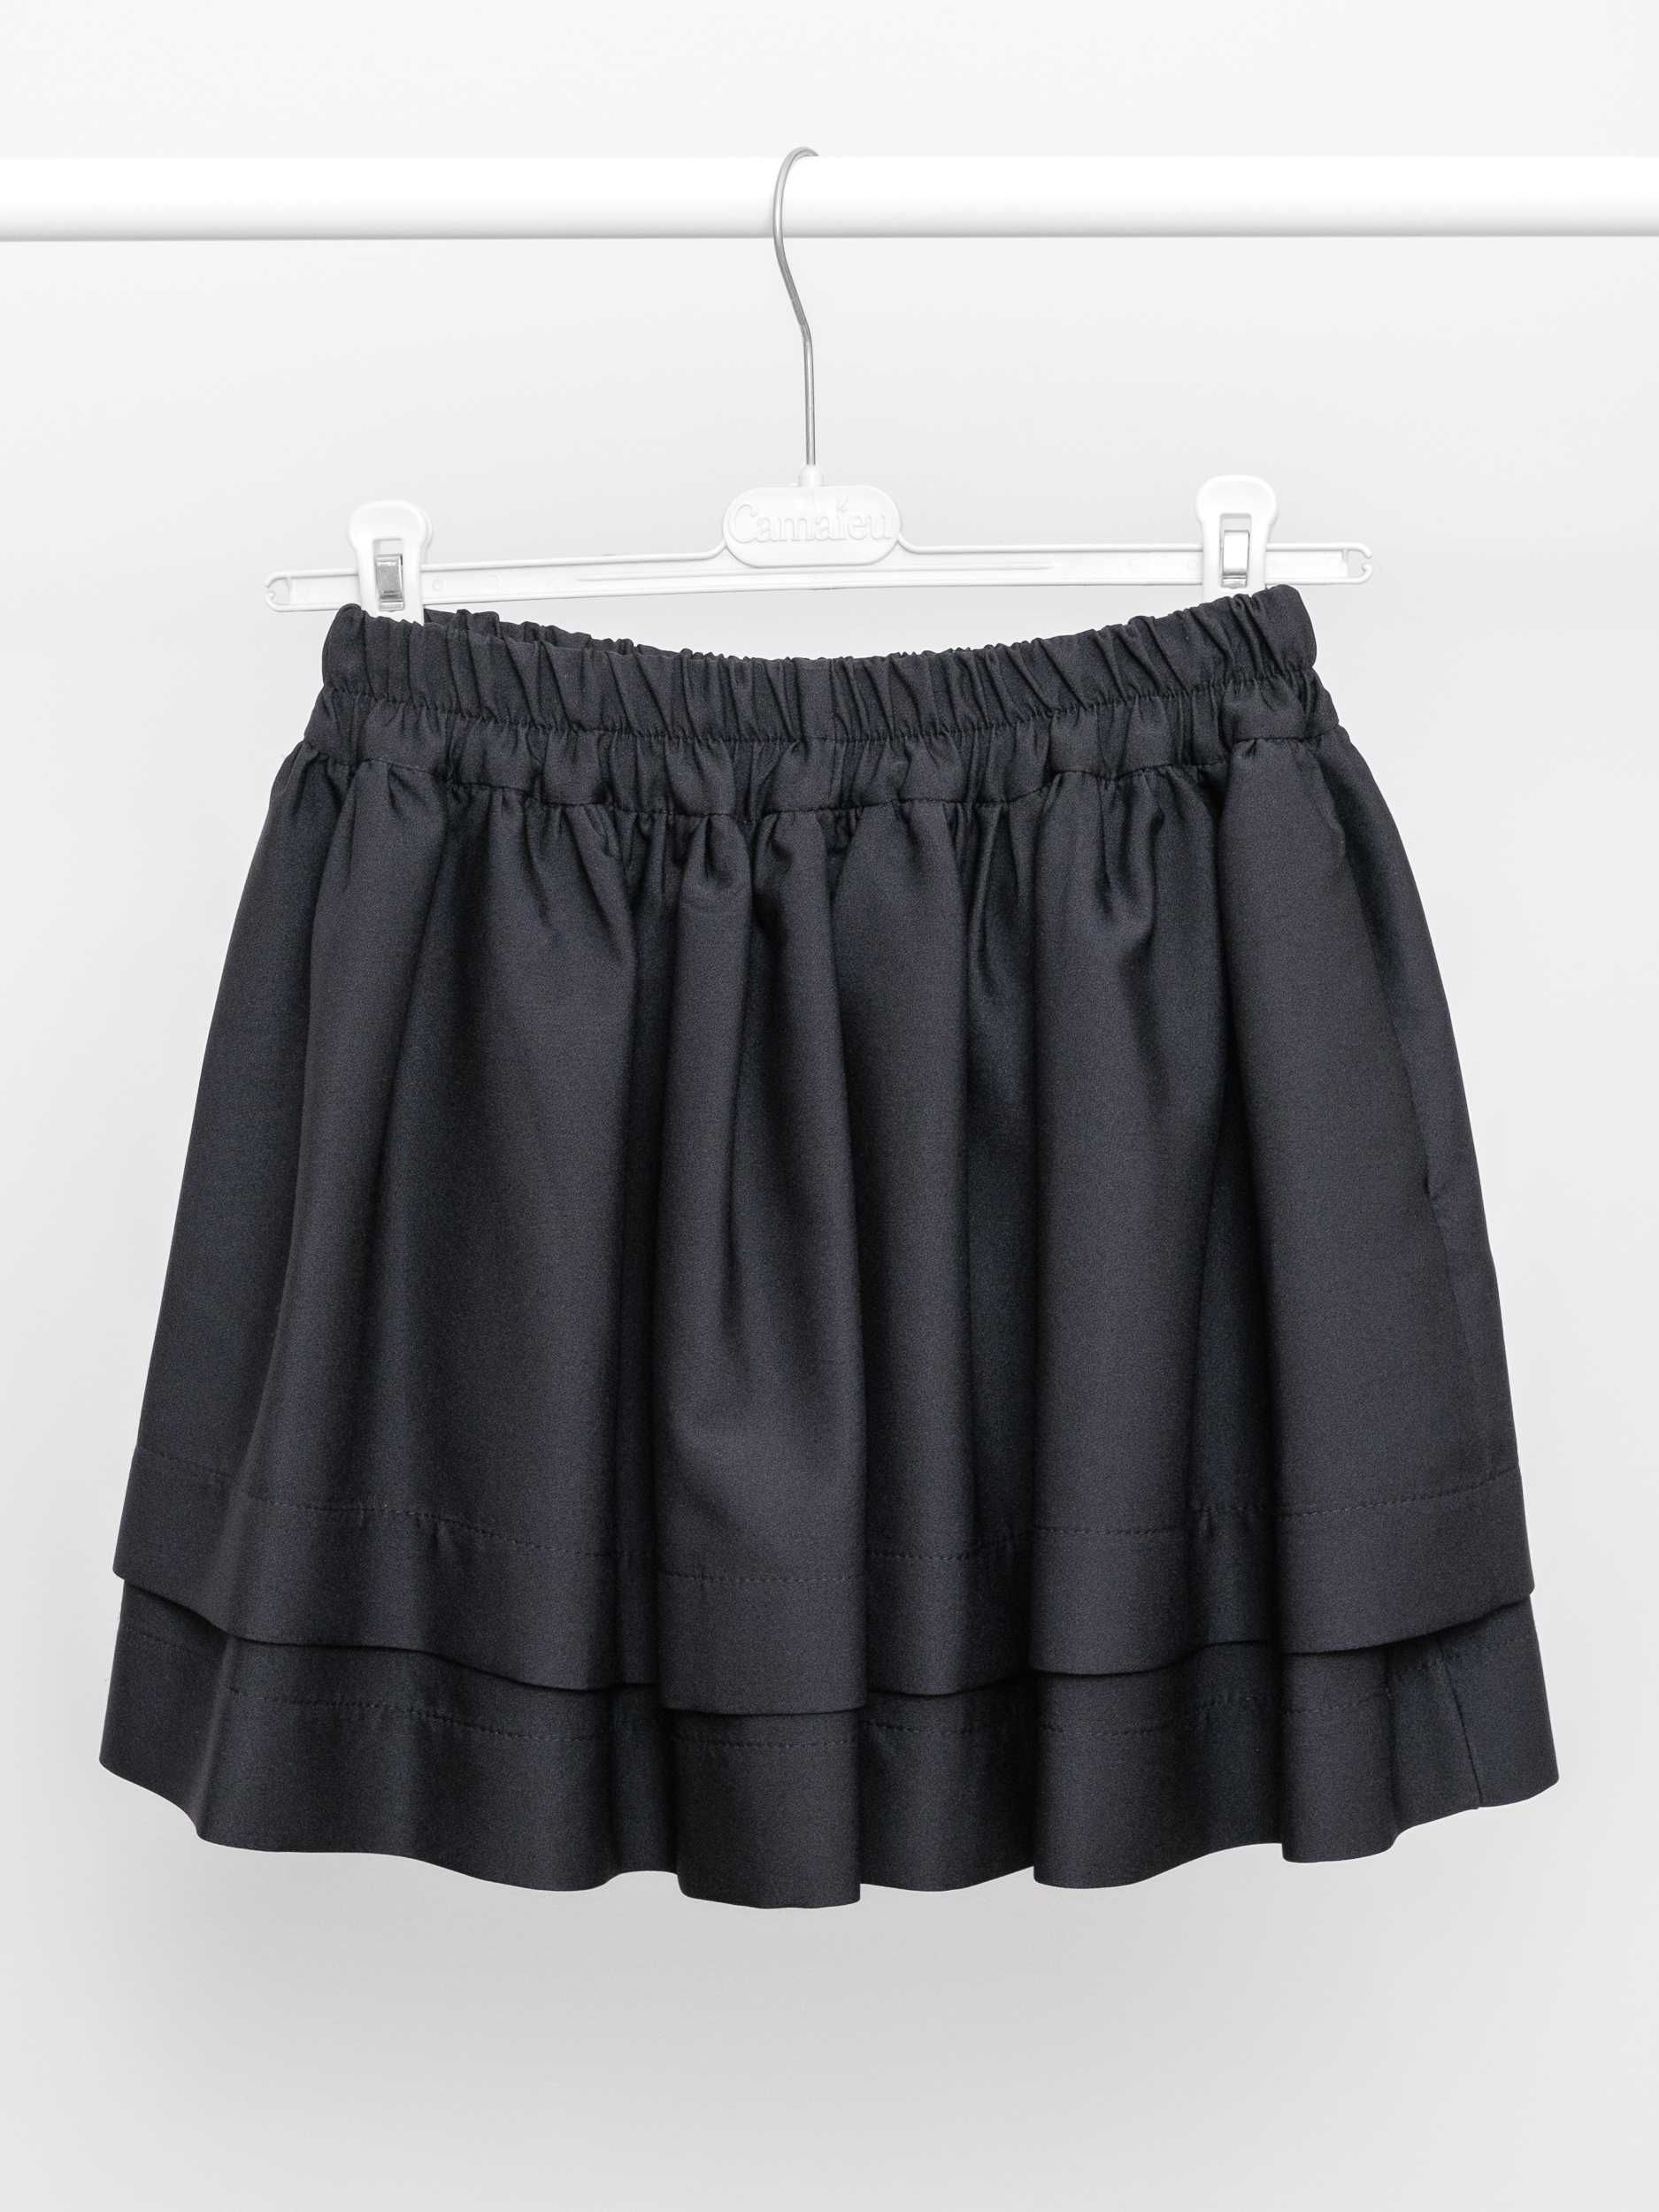 Spódnica mini czarna z kieszeniami rozmiar 38